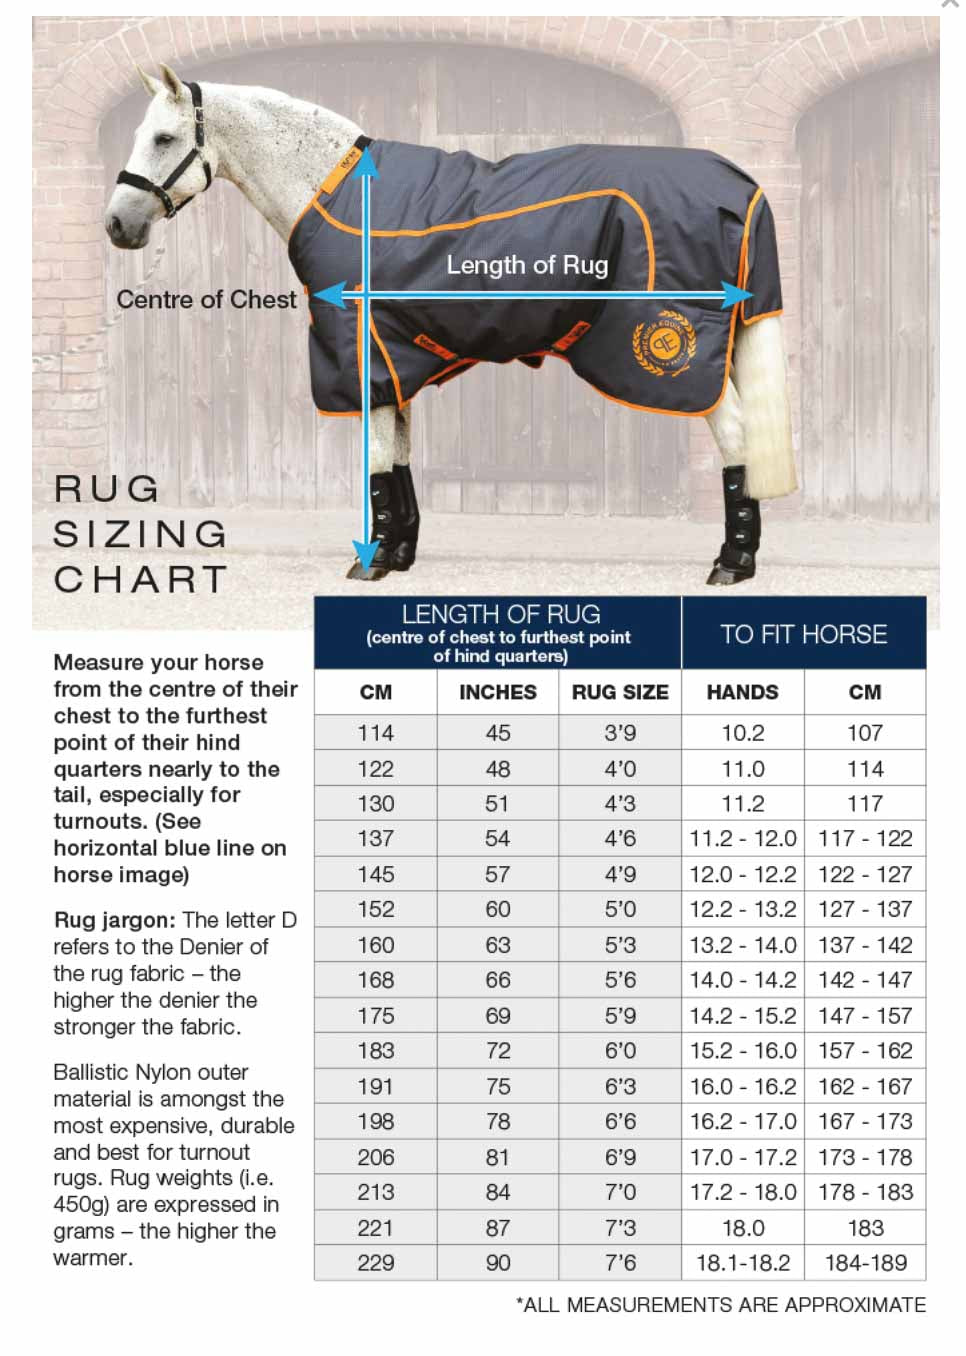 Guide des tailles - Couverture cheval